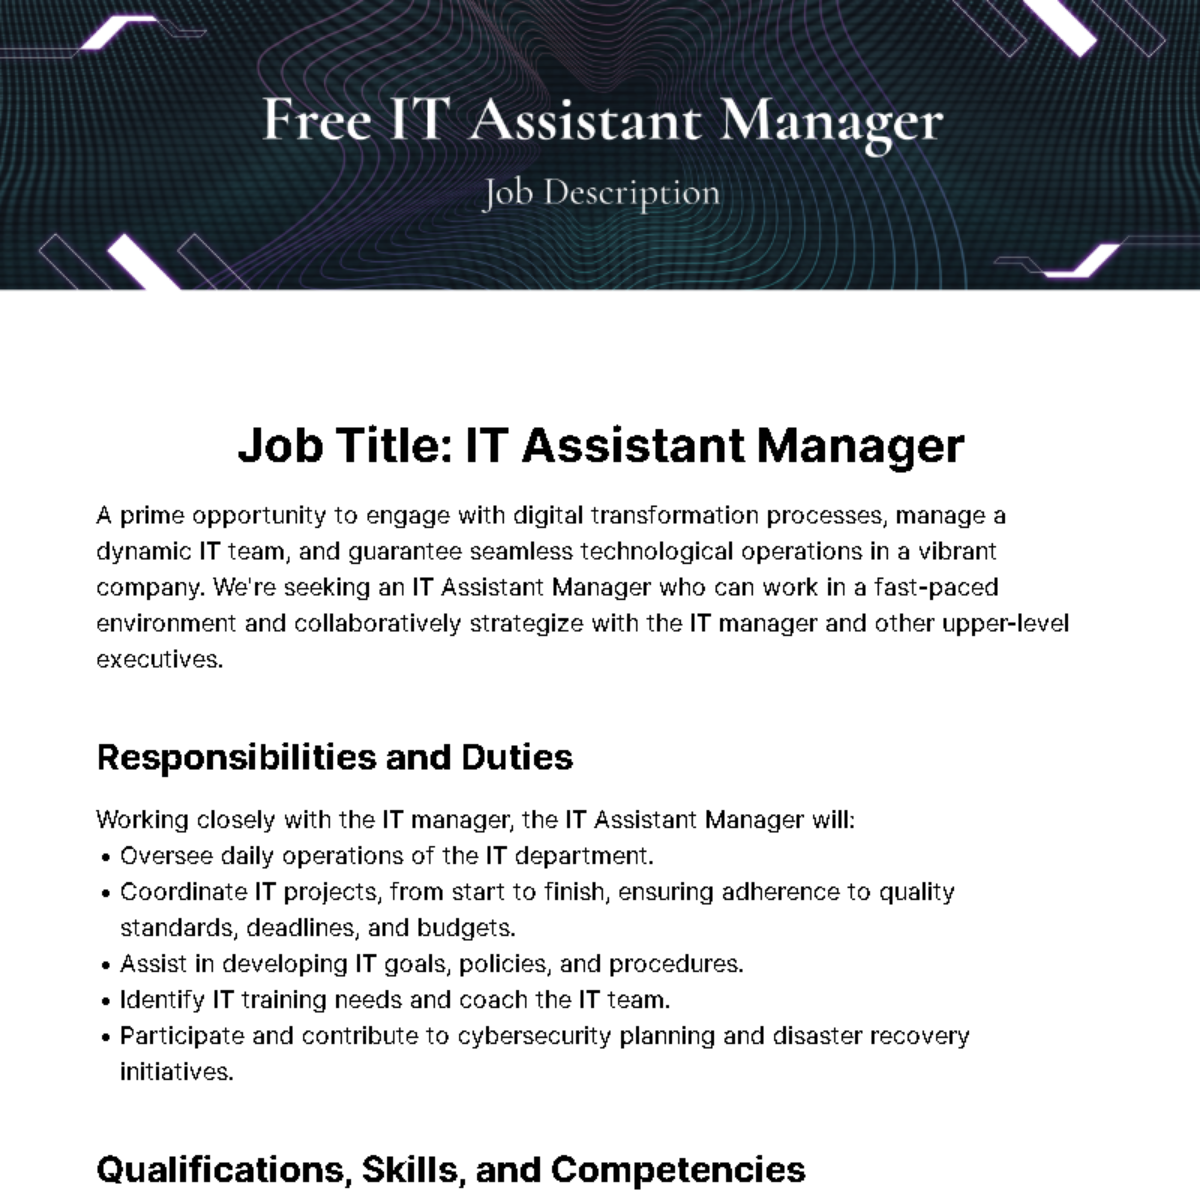 Free IT Assistant Manager Job Description Template